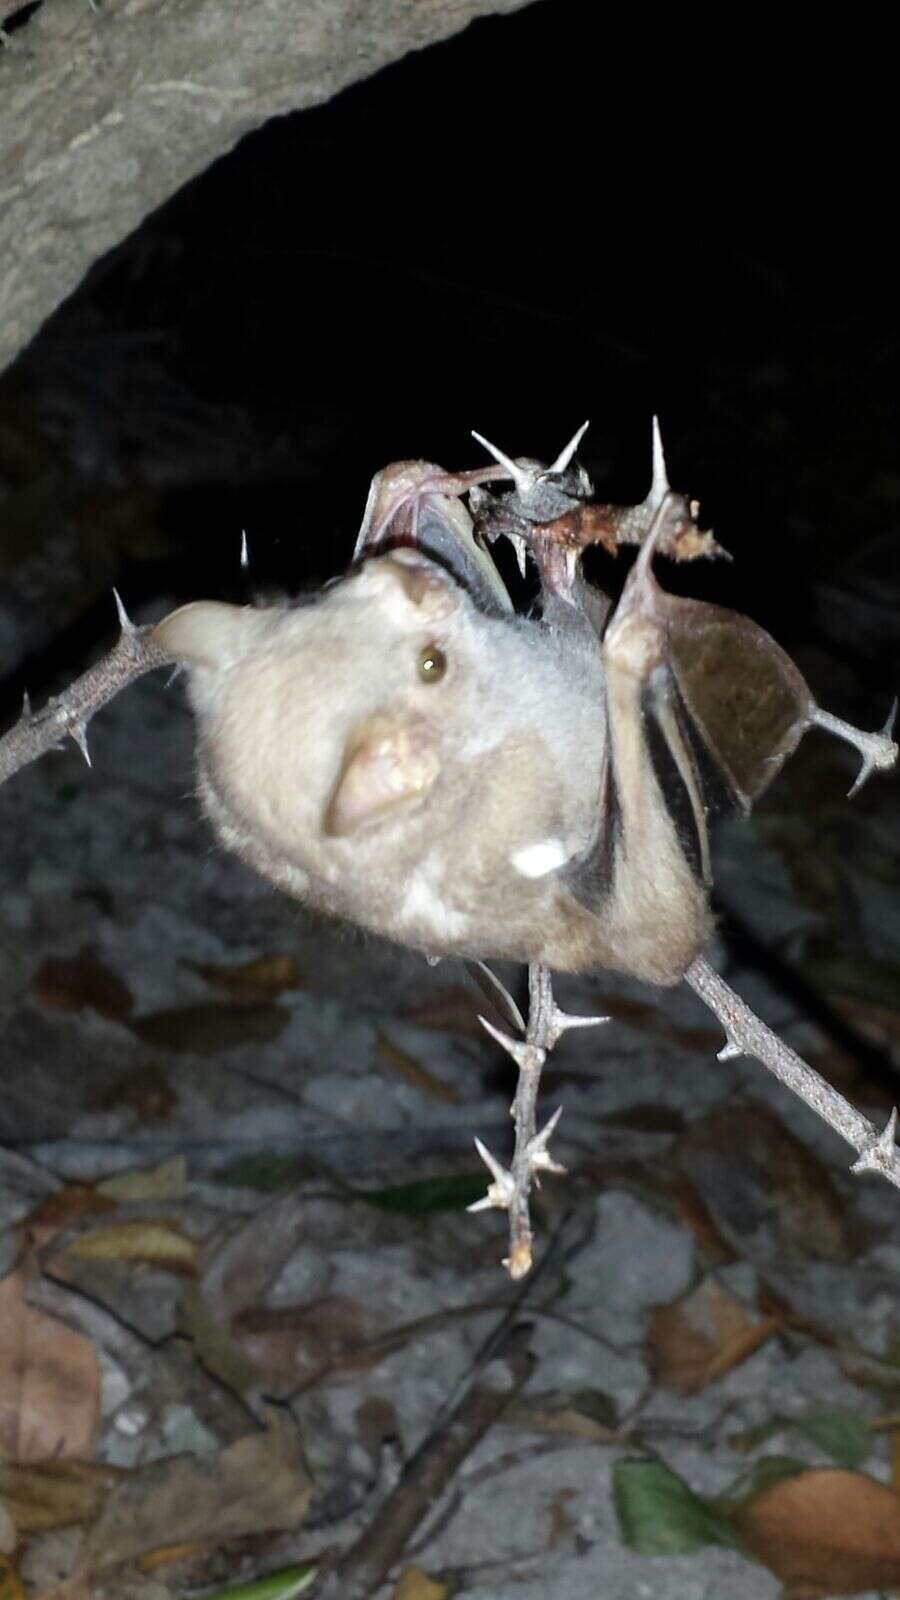 Image of fig-eating bat